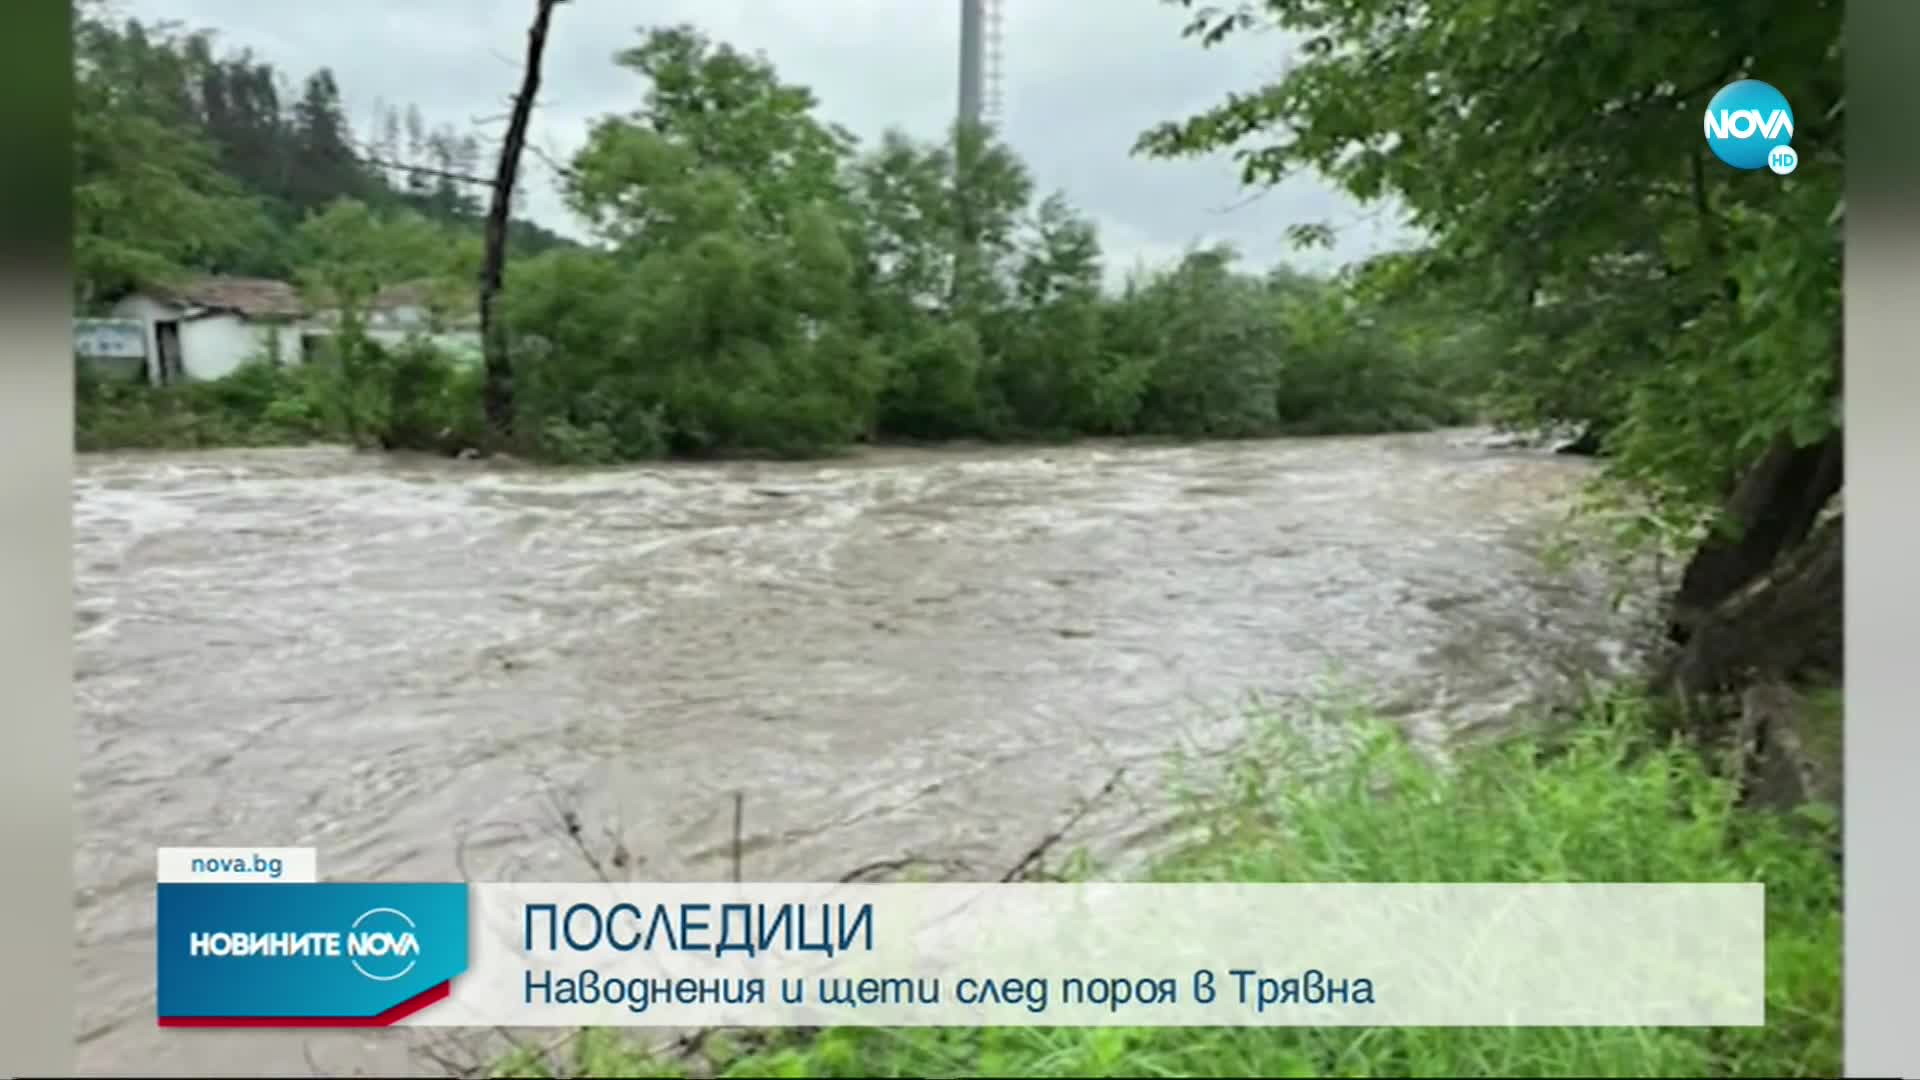 Обявиха частично бедствено положение в Трявна